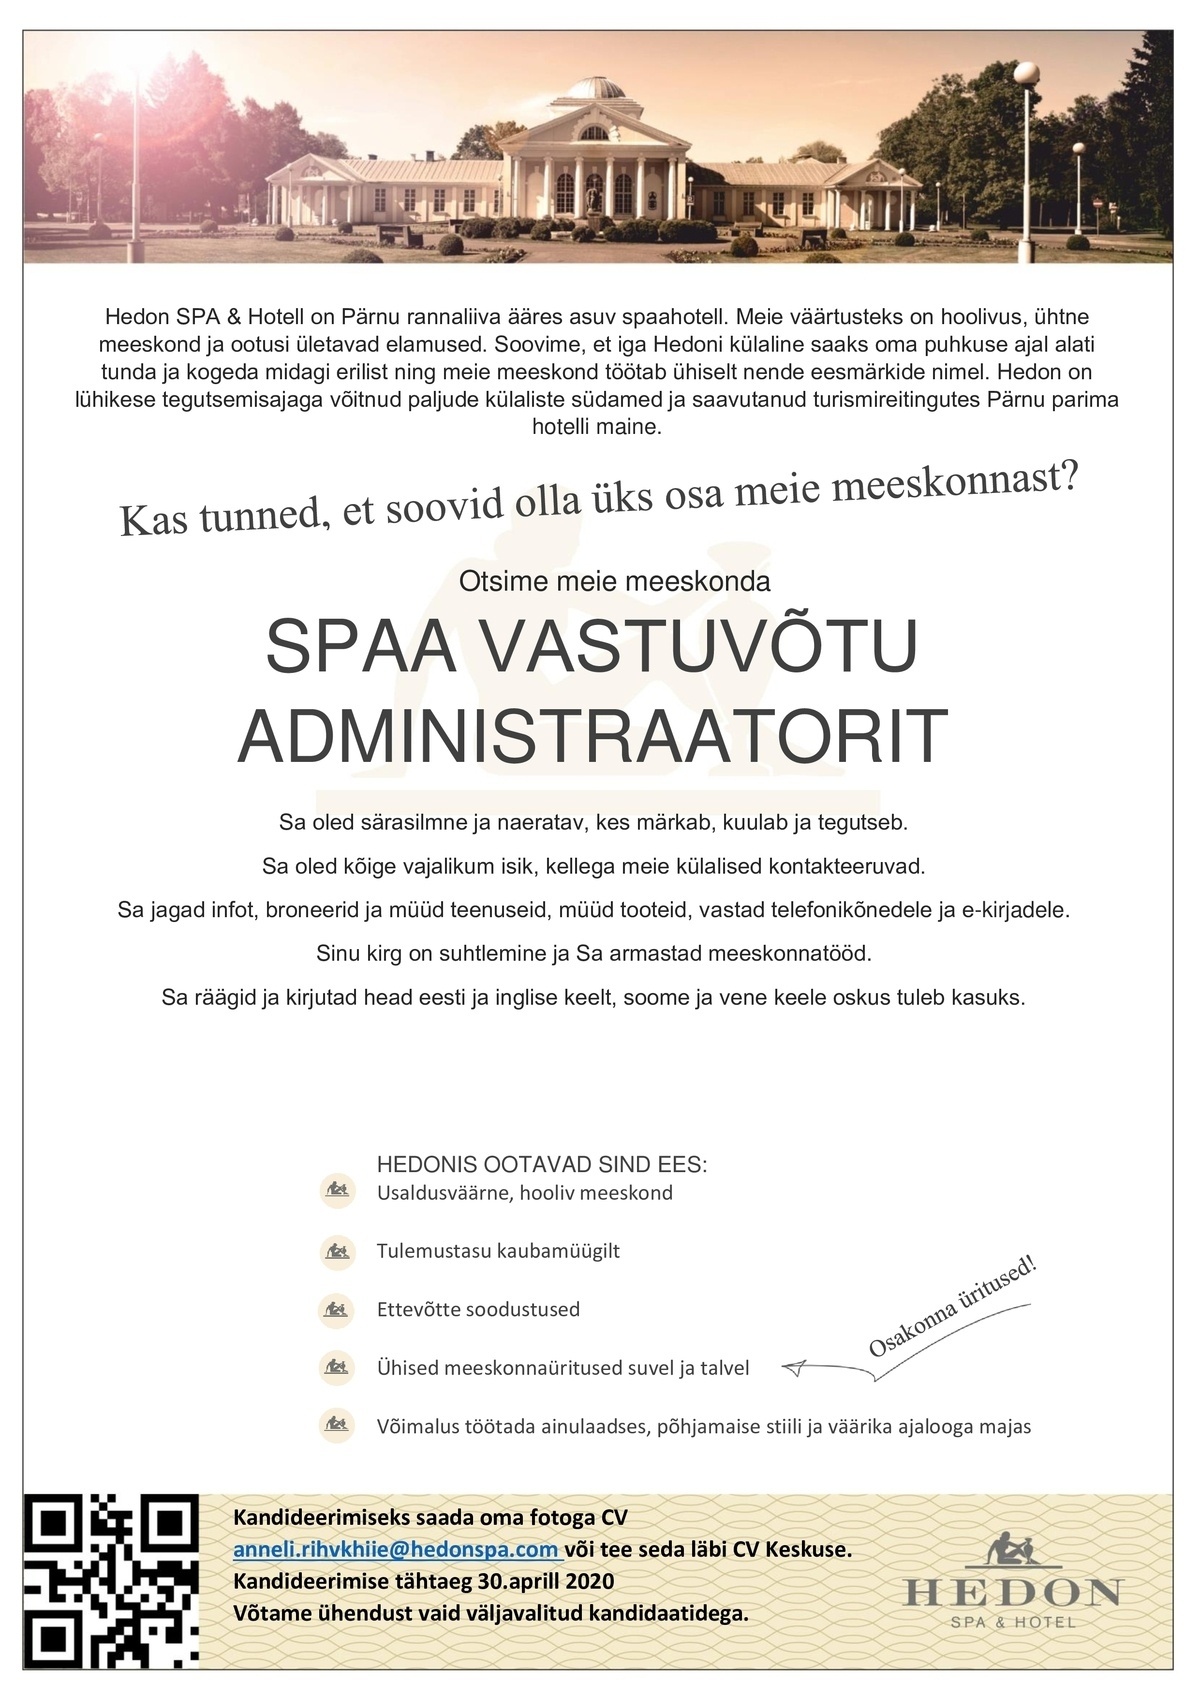 Supeluse Hotell OÜ Hedon SPA & HOTEL Spaa vastuvõtu administraator